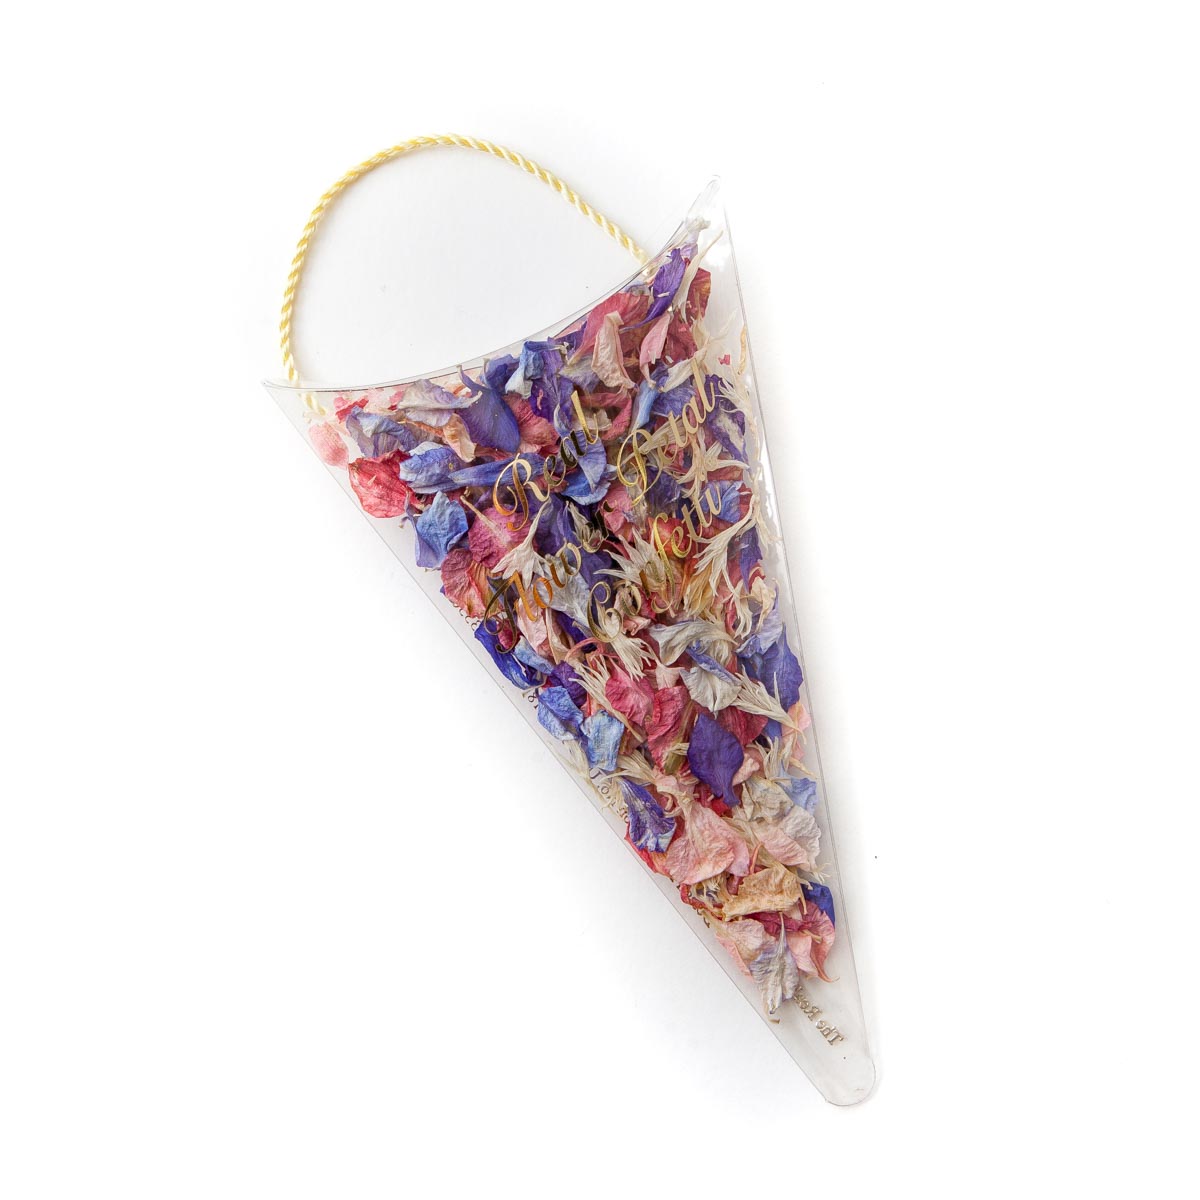 Rainbow delphinium petals confetti sachet